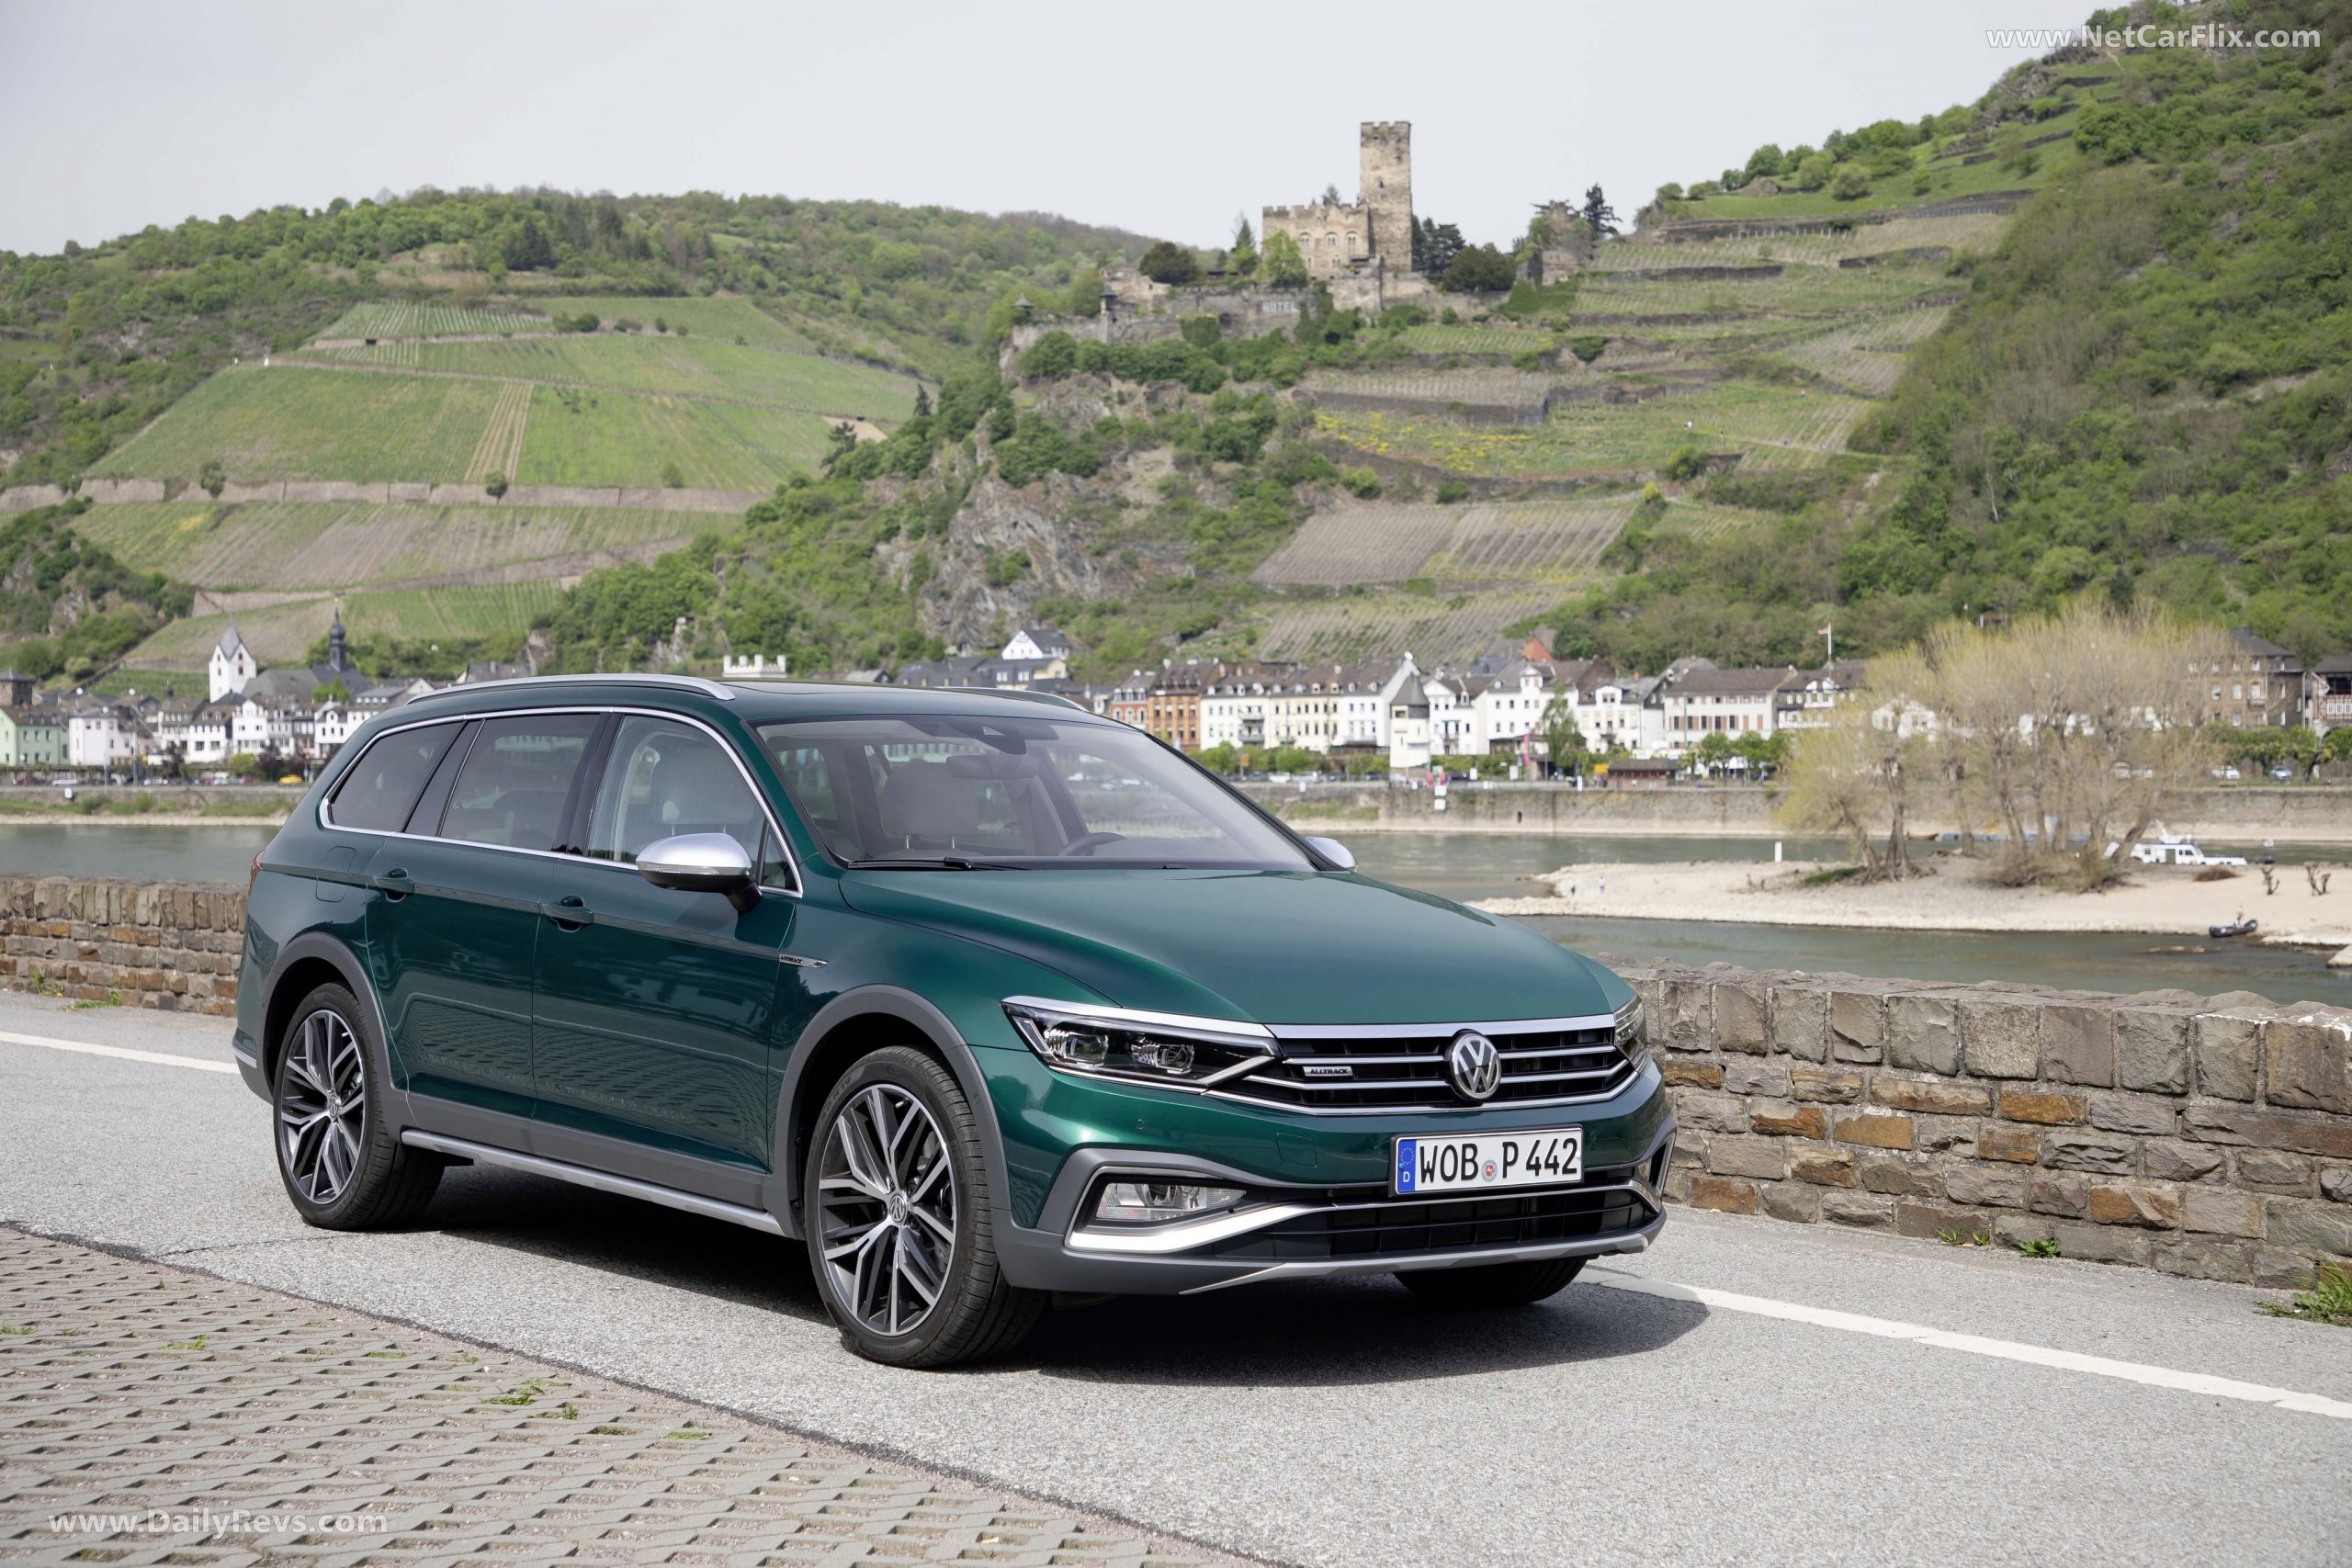 2022 Volkswagen Passat Gt Price, Release Date, Engine ...